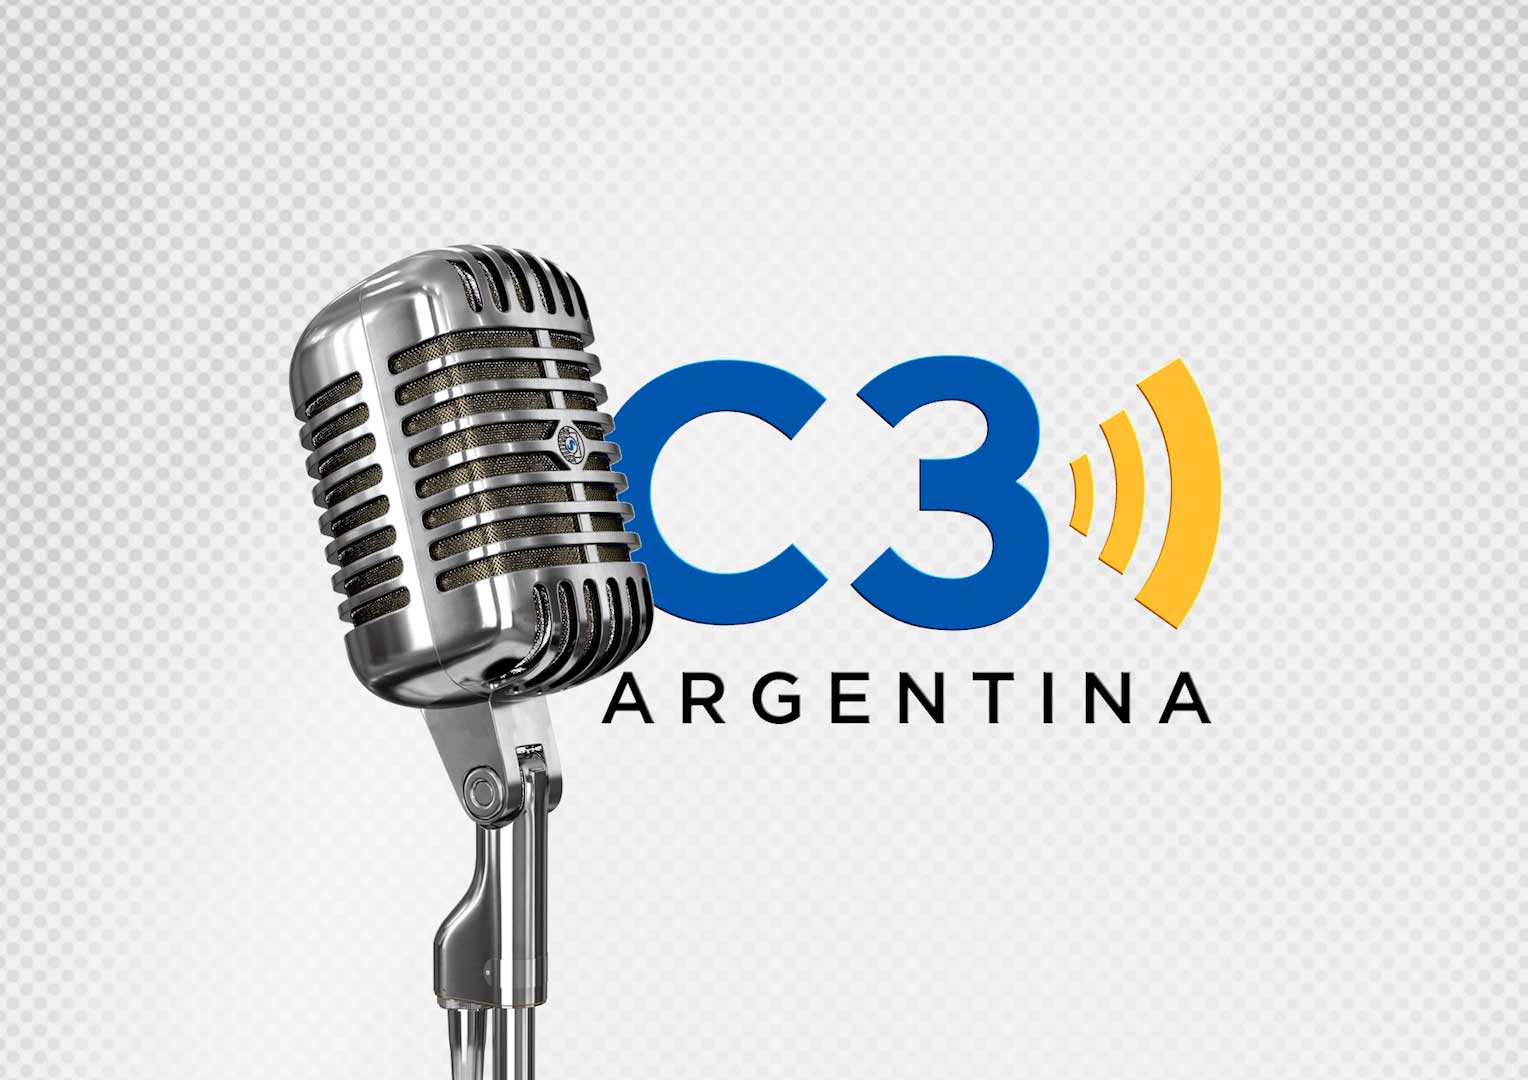 Cadena 3 Argentina - Últimas Noticias de Argentina y del Mundo - Radio en